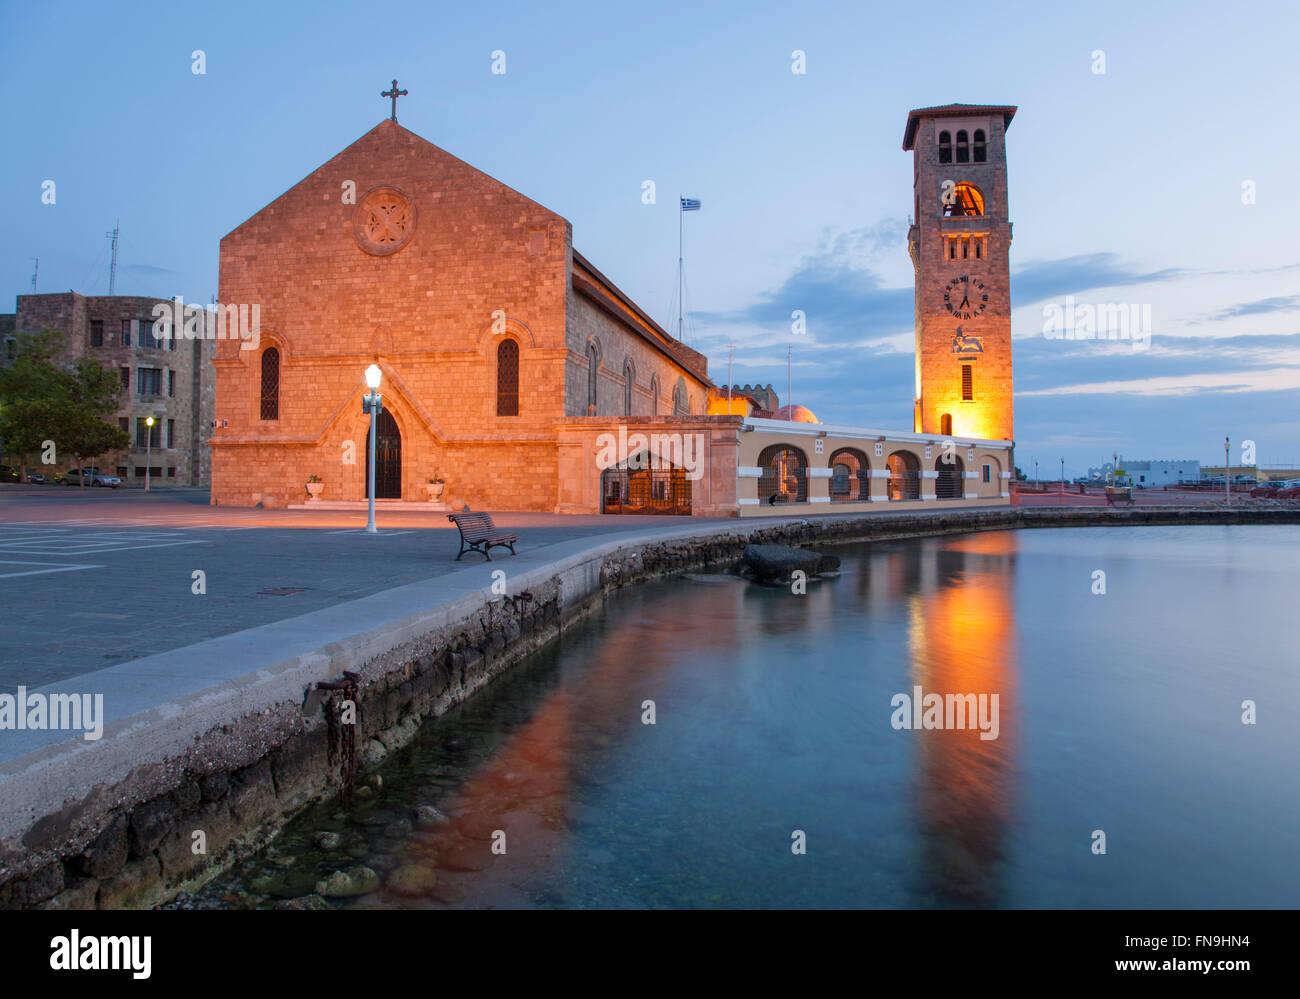 La città di Rodi, rodi, Egeo Meridionale, Grecia. Gli illuminati cattedrale ortodossa si riflette nel porto di Mandraki, alba. Foto Stock